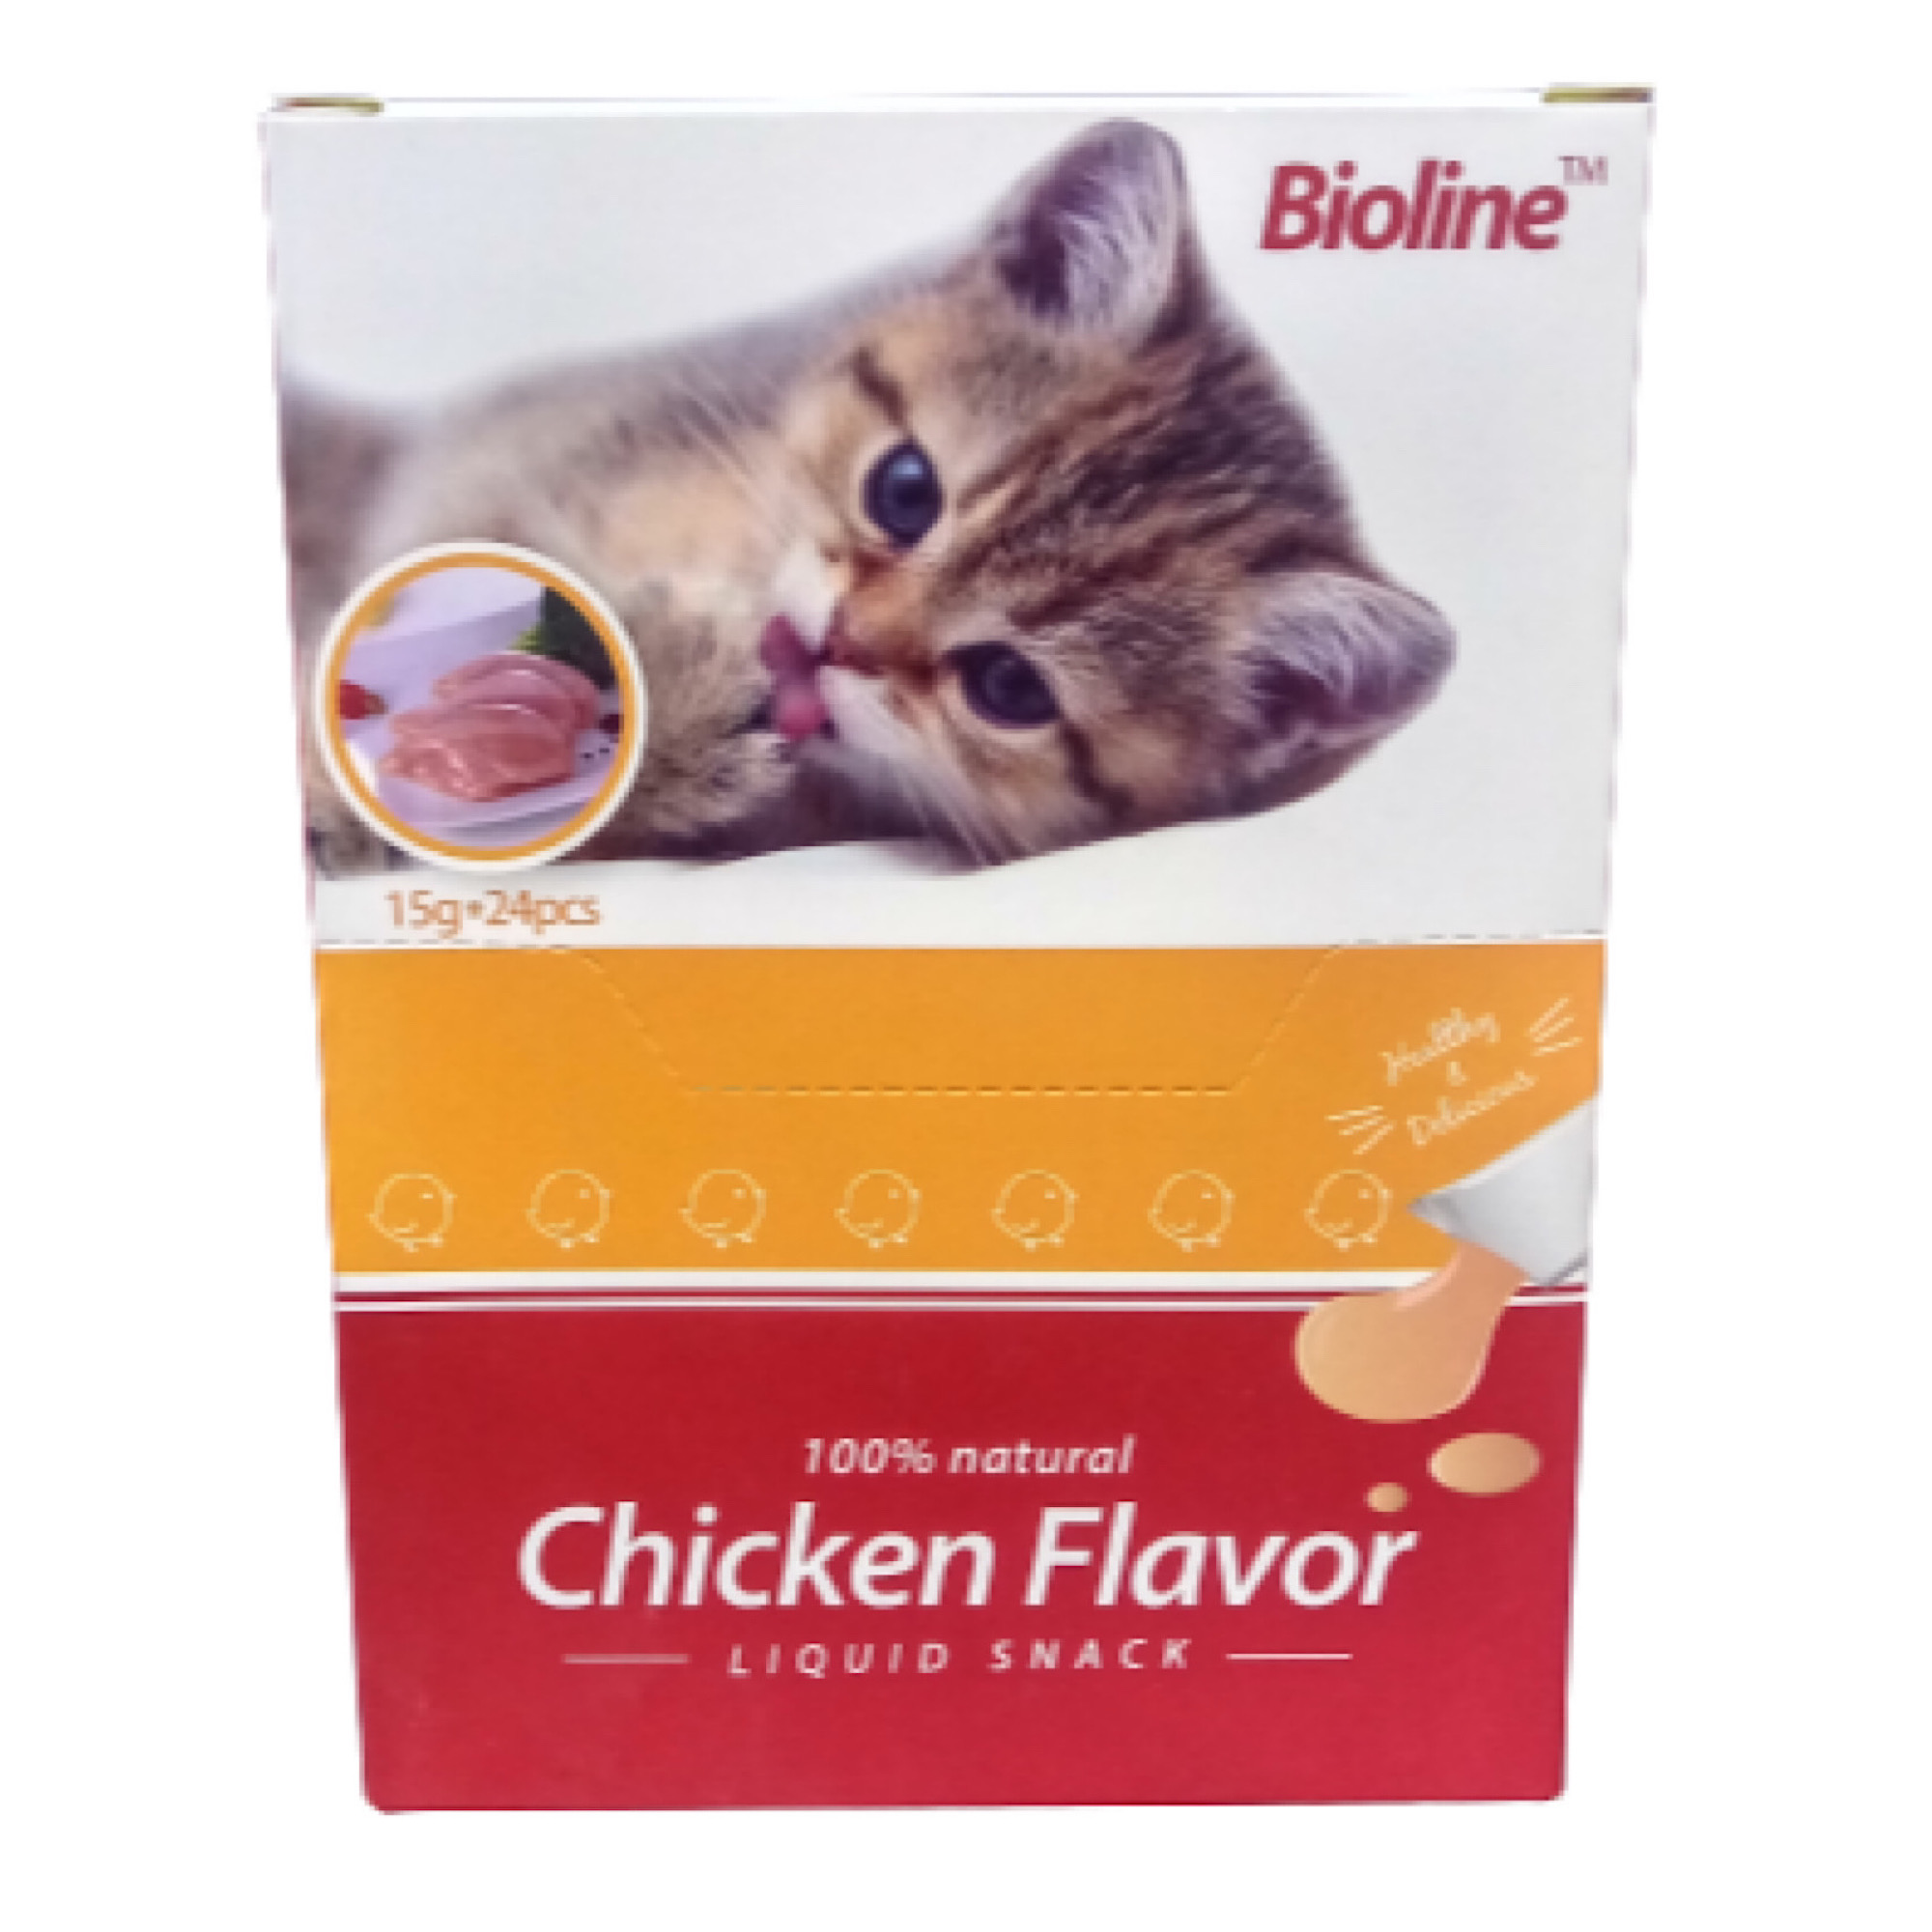 اسنک مایع گربه بیولاین مدل Chicken Flavor وزن 15 گرم بسته 24 عددی